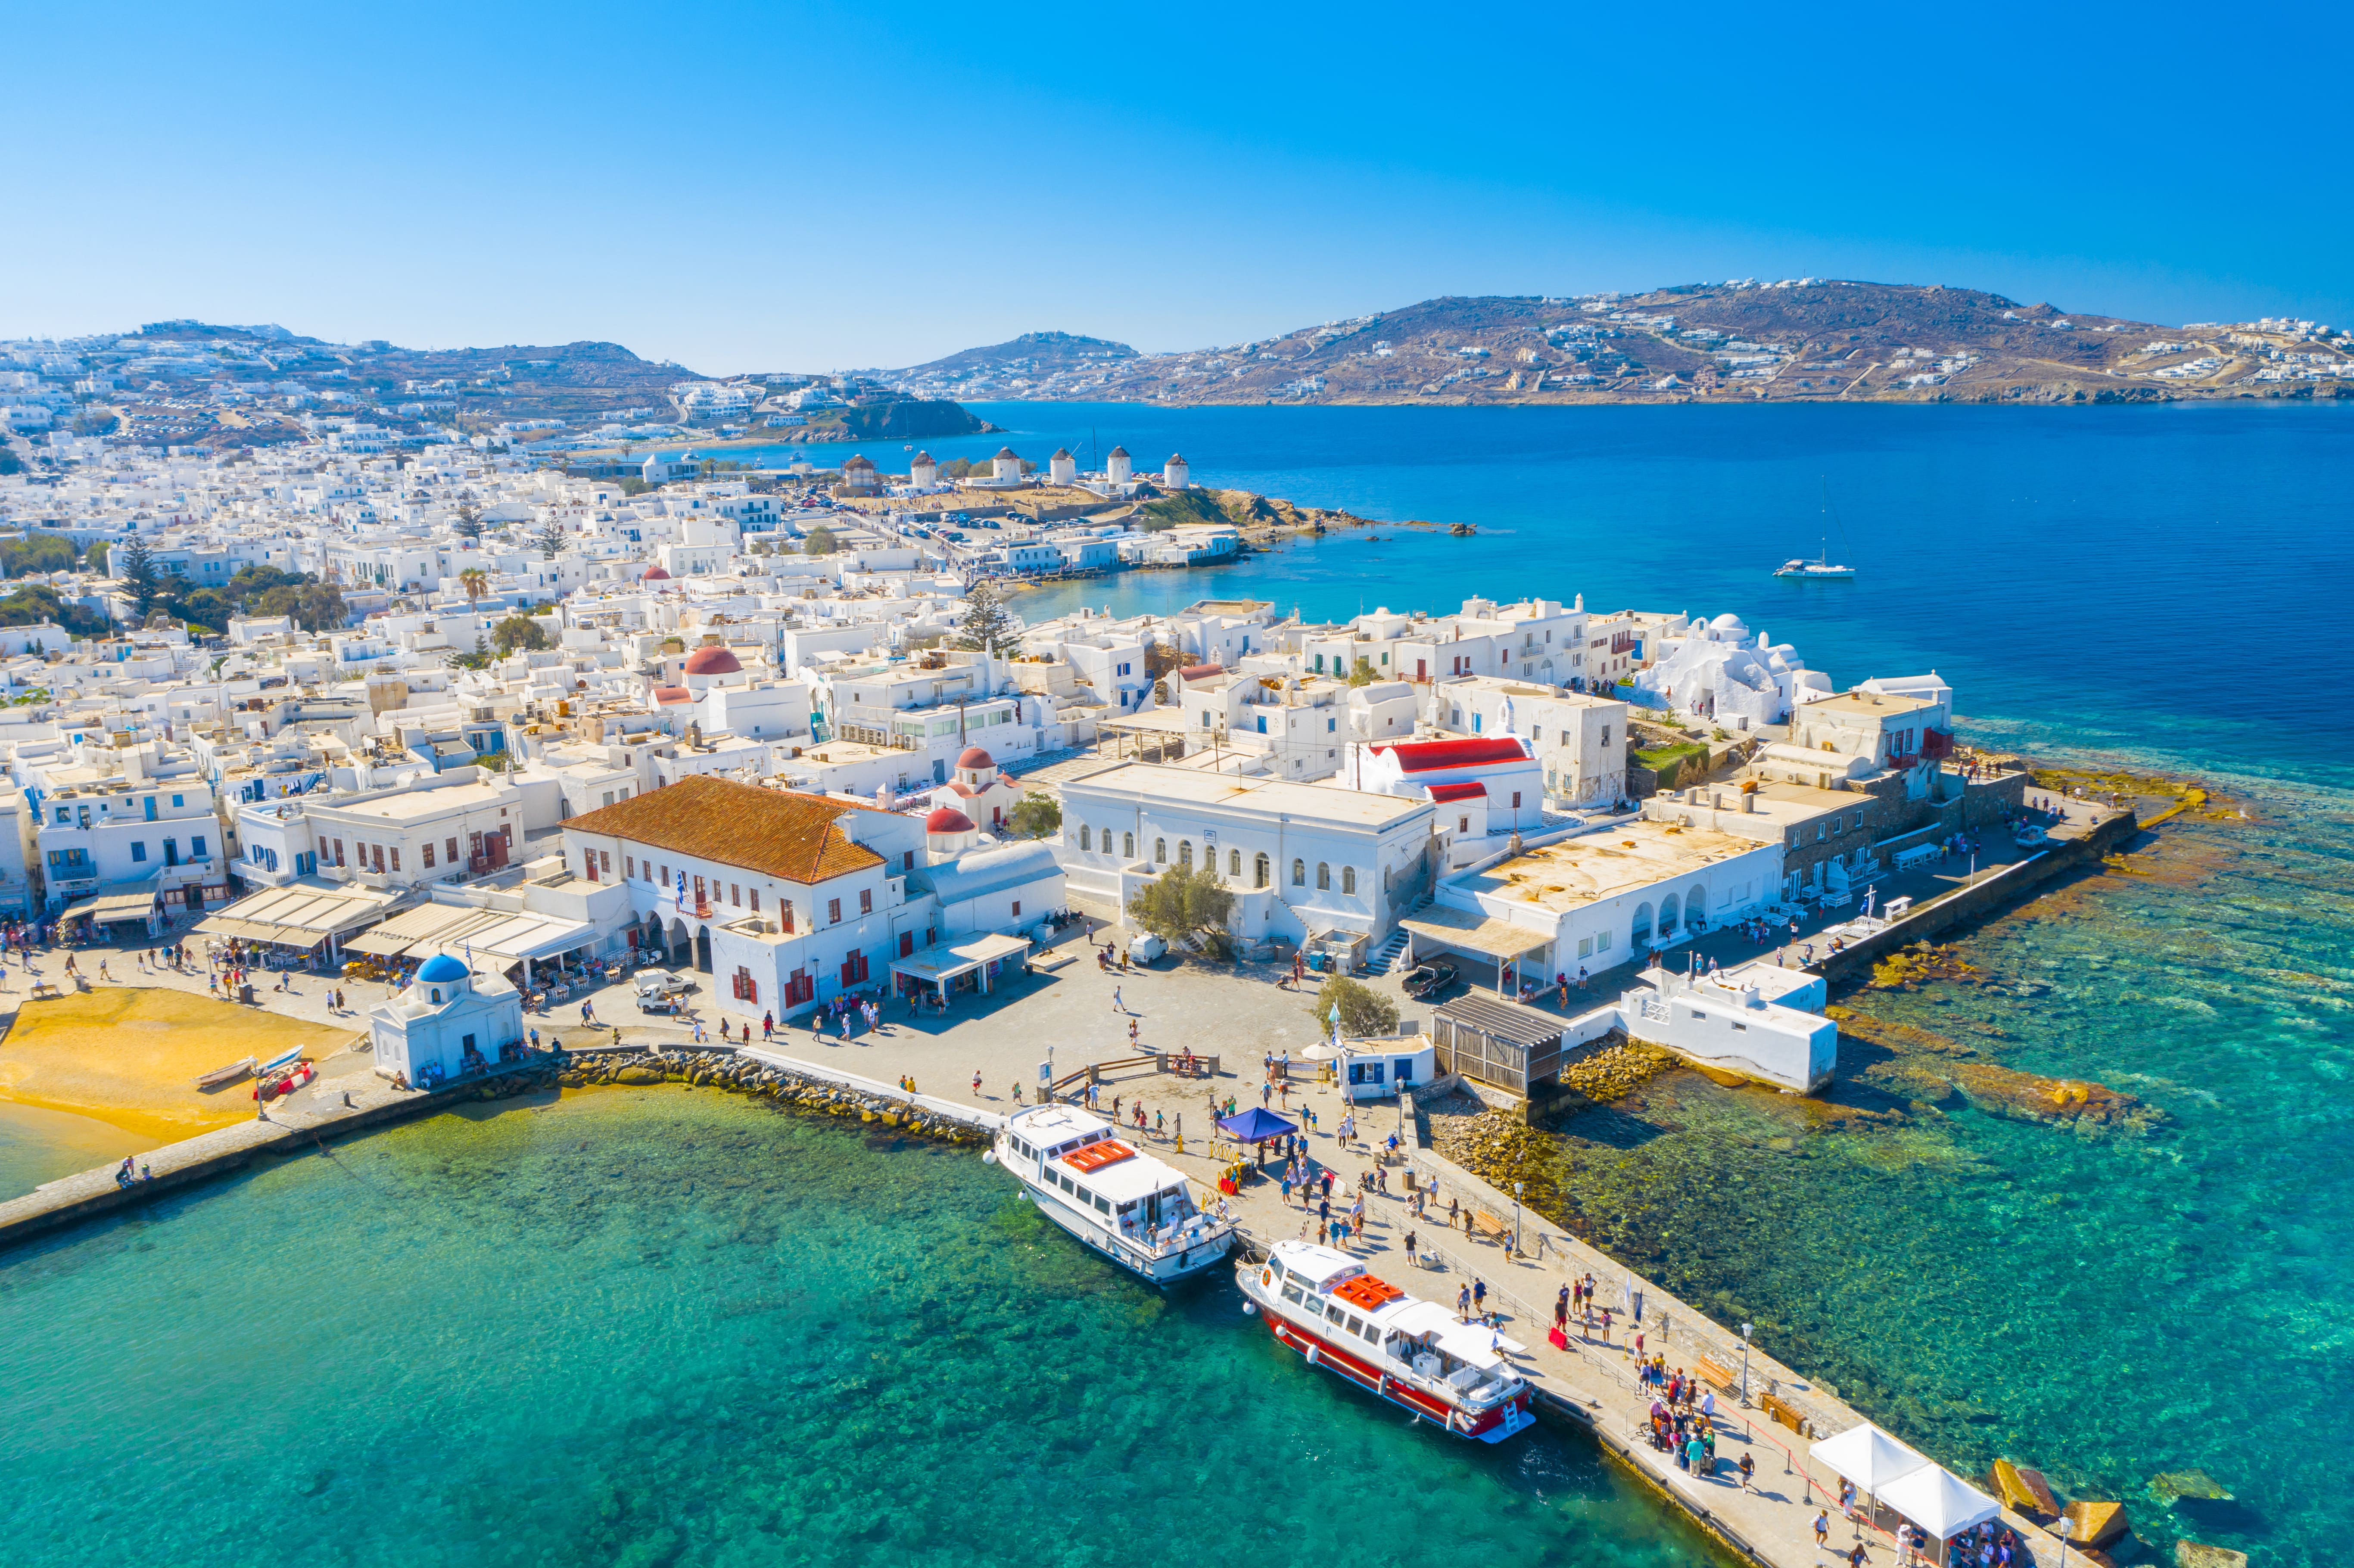 Vue panoramique de la ville de Mykonos, îles Cyclades, Grèce © proslgn - stock.adobe.com